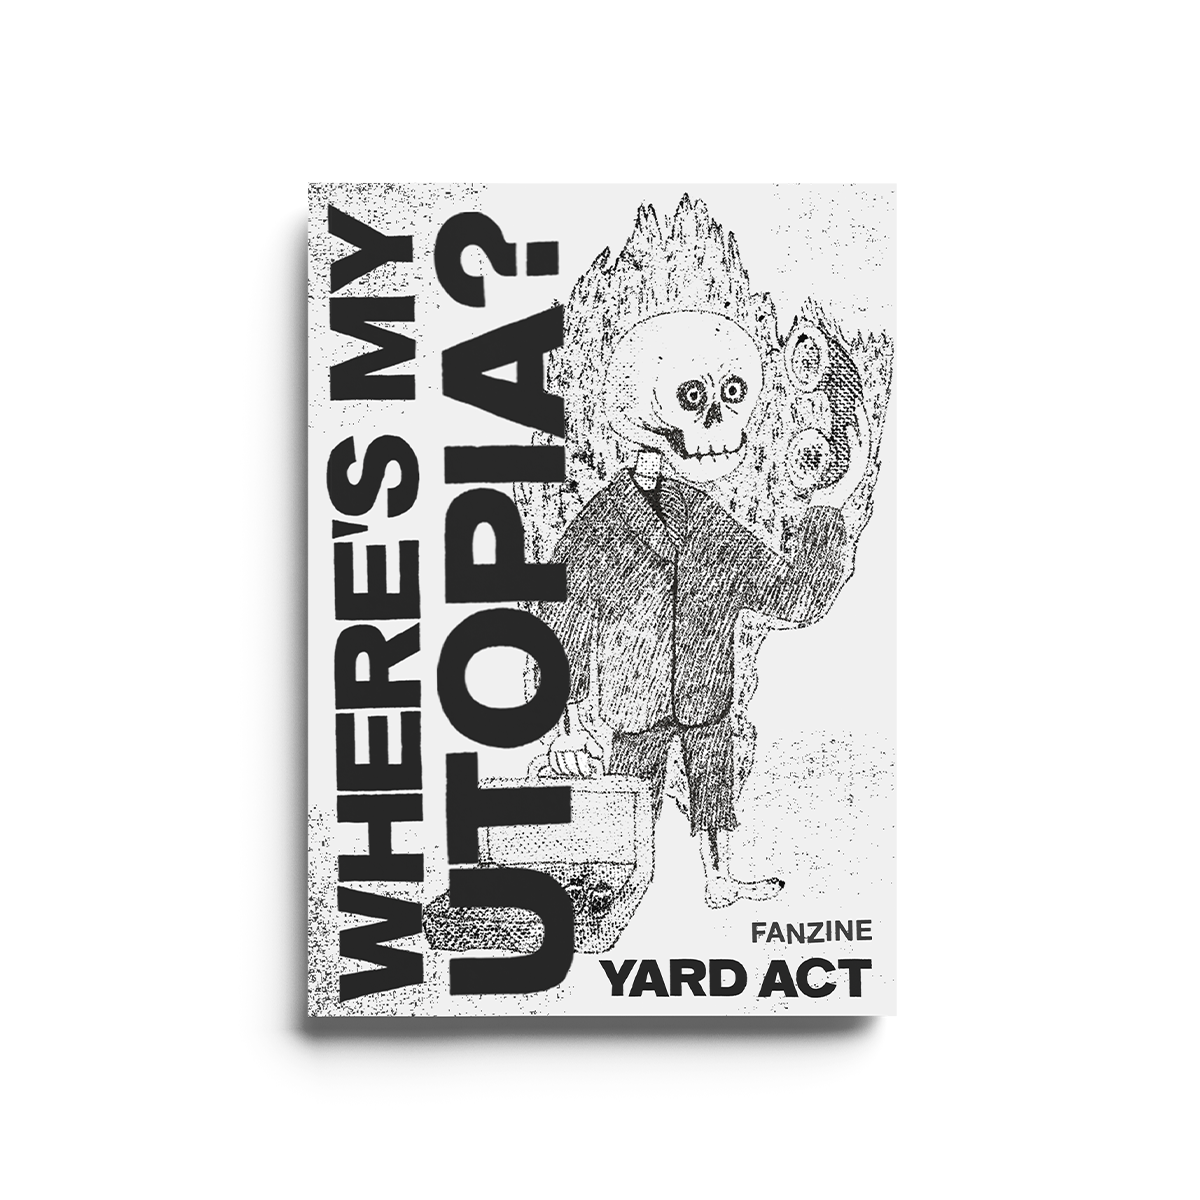 Yard Act - Where's My Utopia CD Zine